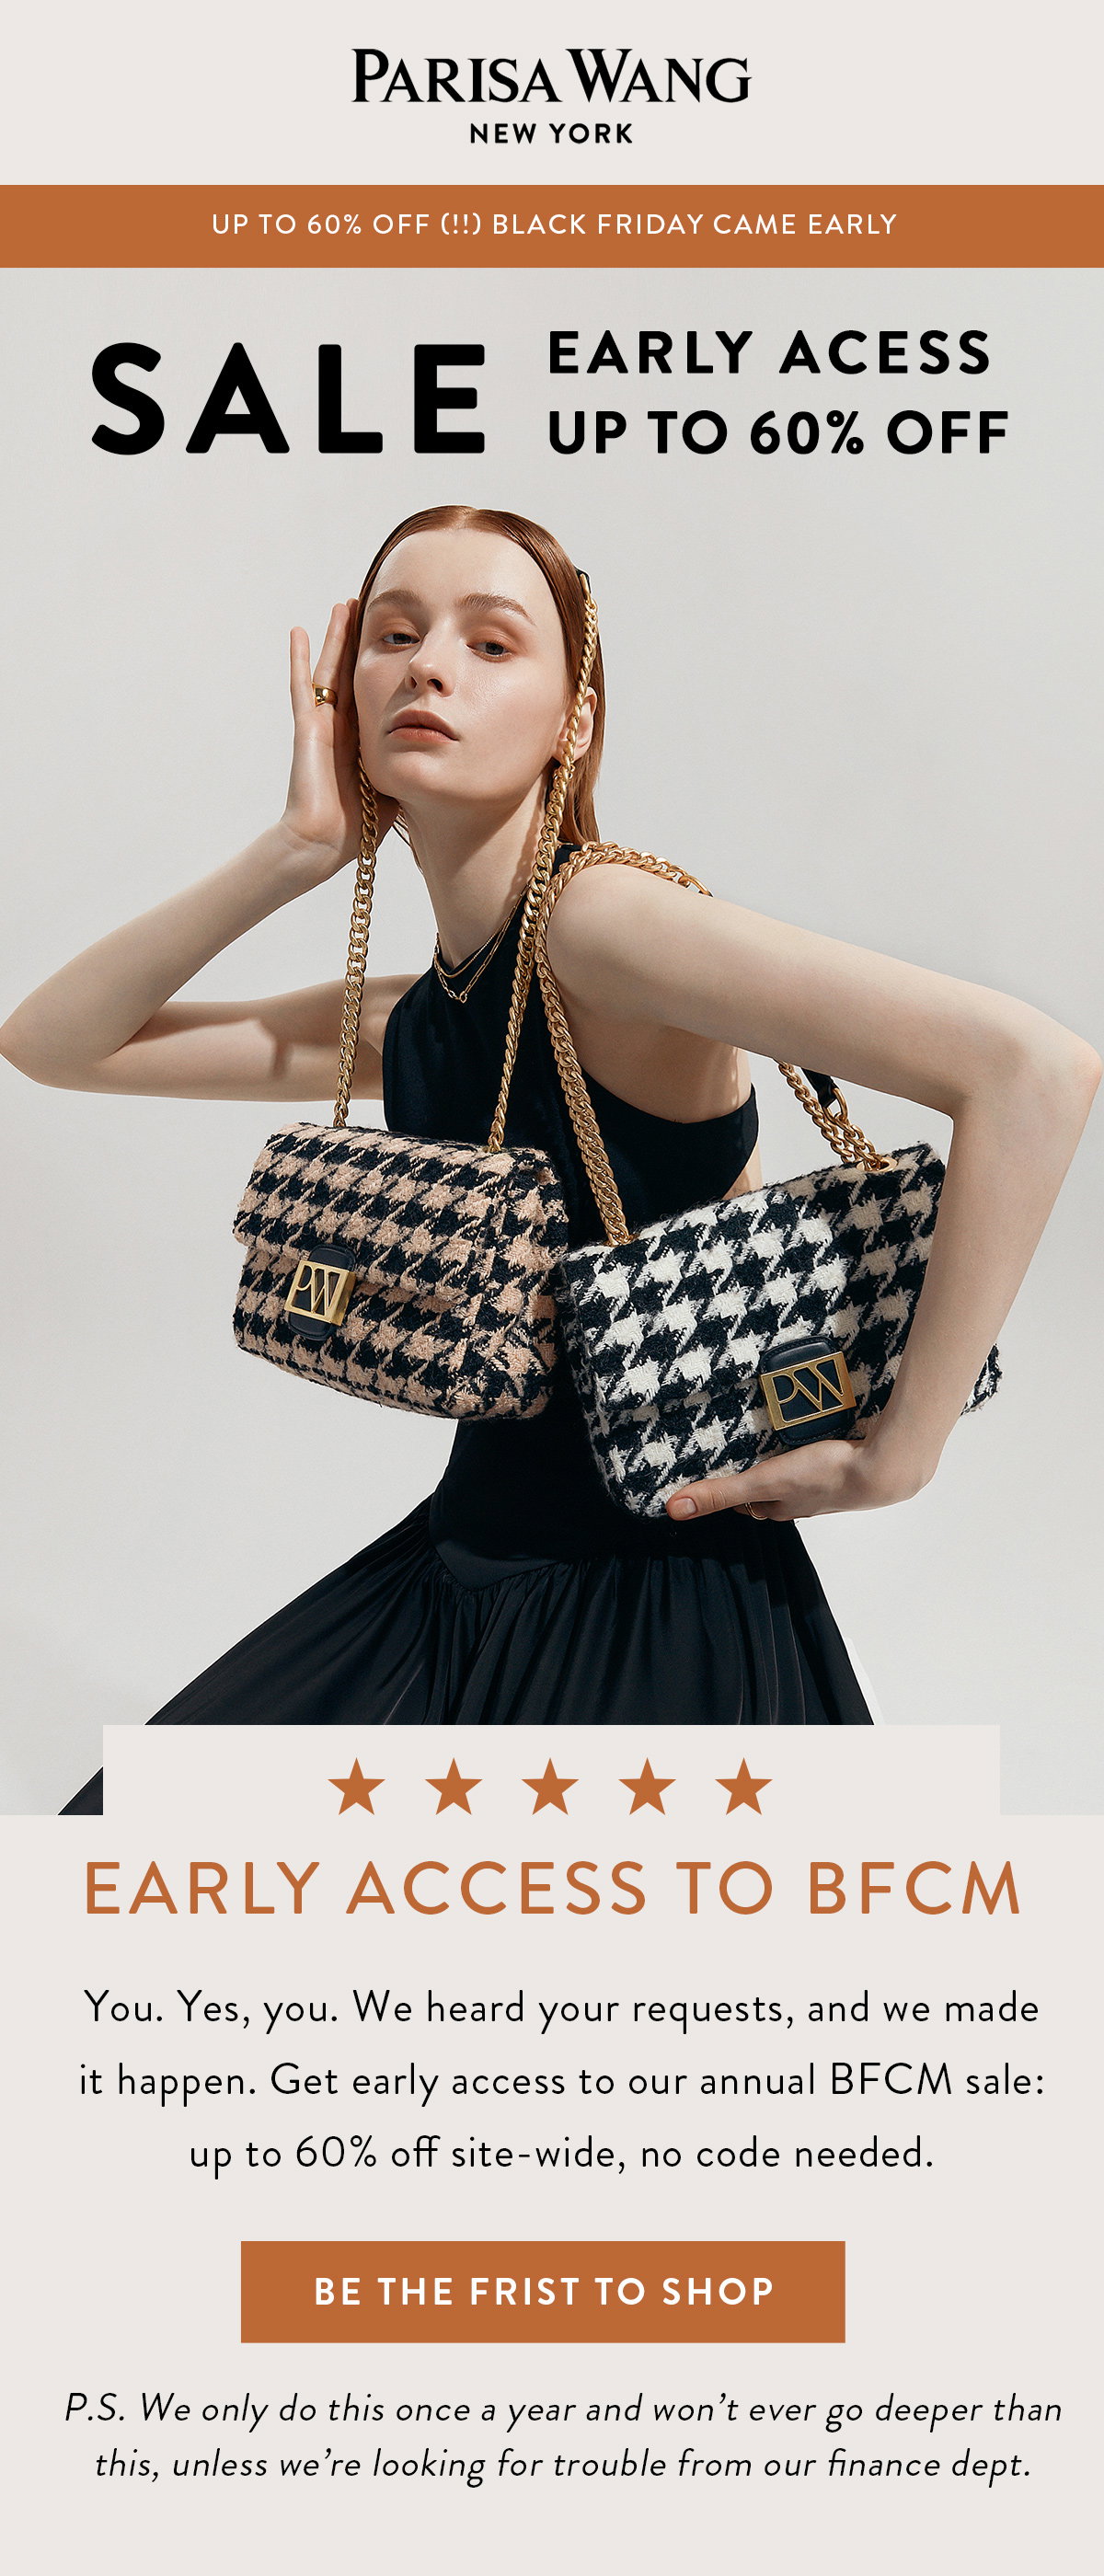 PARISA WANG®  Unlocked Bucket Bag – Parisa New York